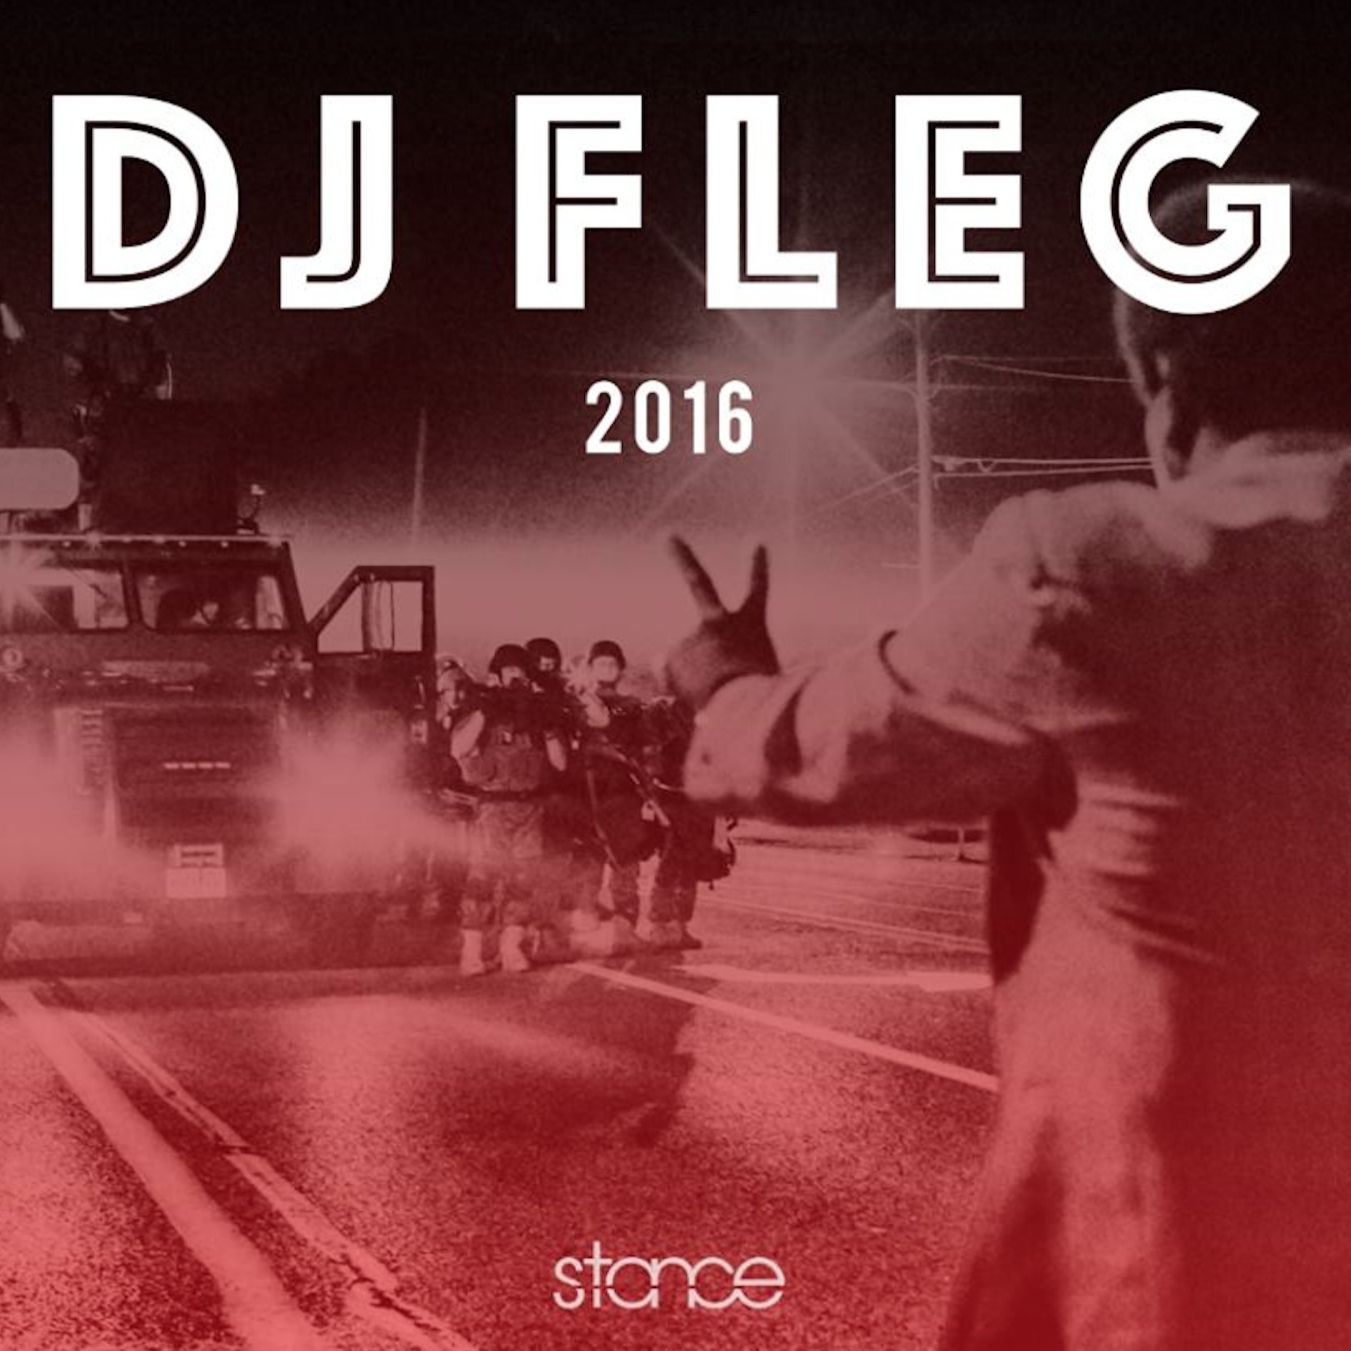 Download DJ FLEG - STANCE BBOY/BGIRL MIX aka BBOYISM